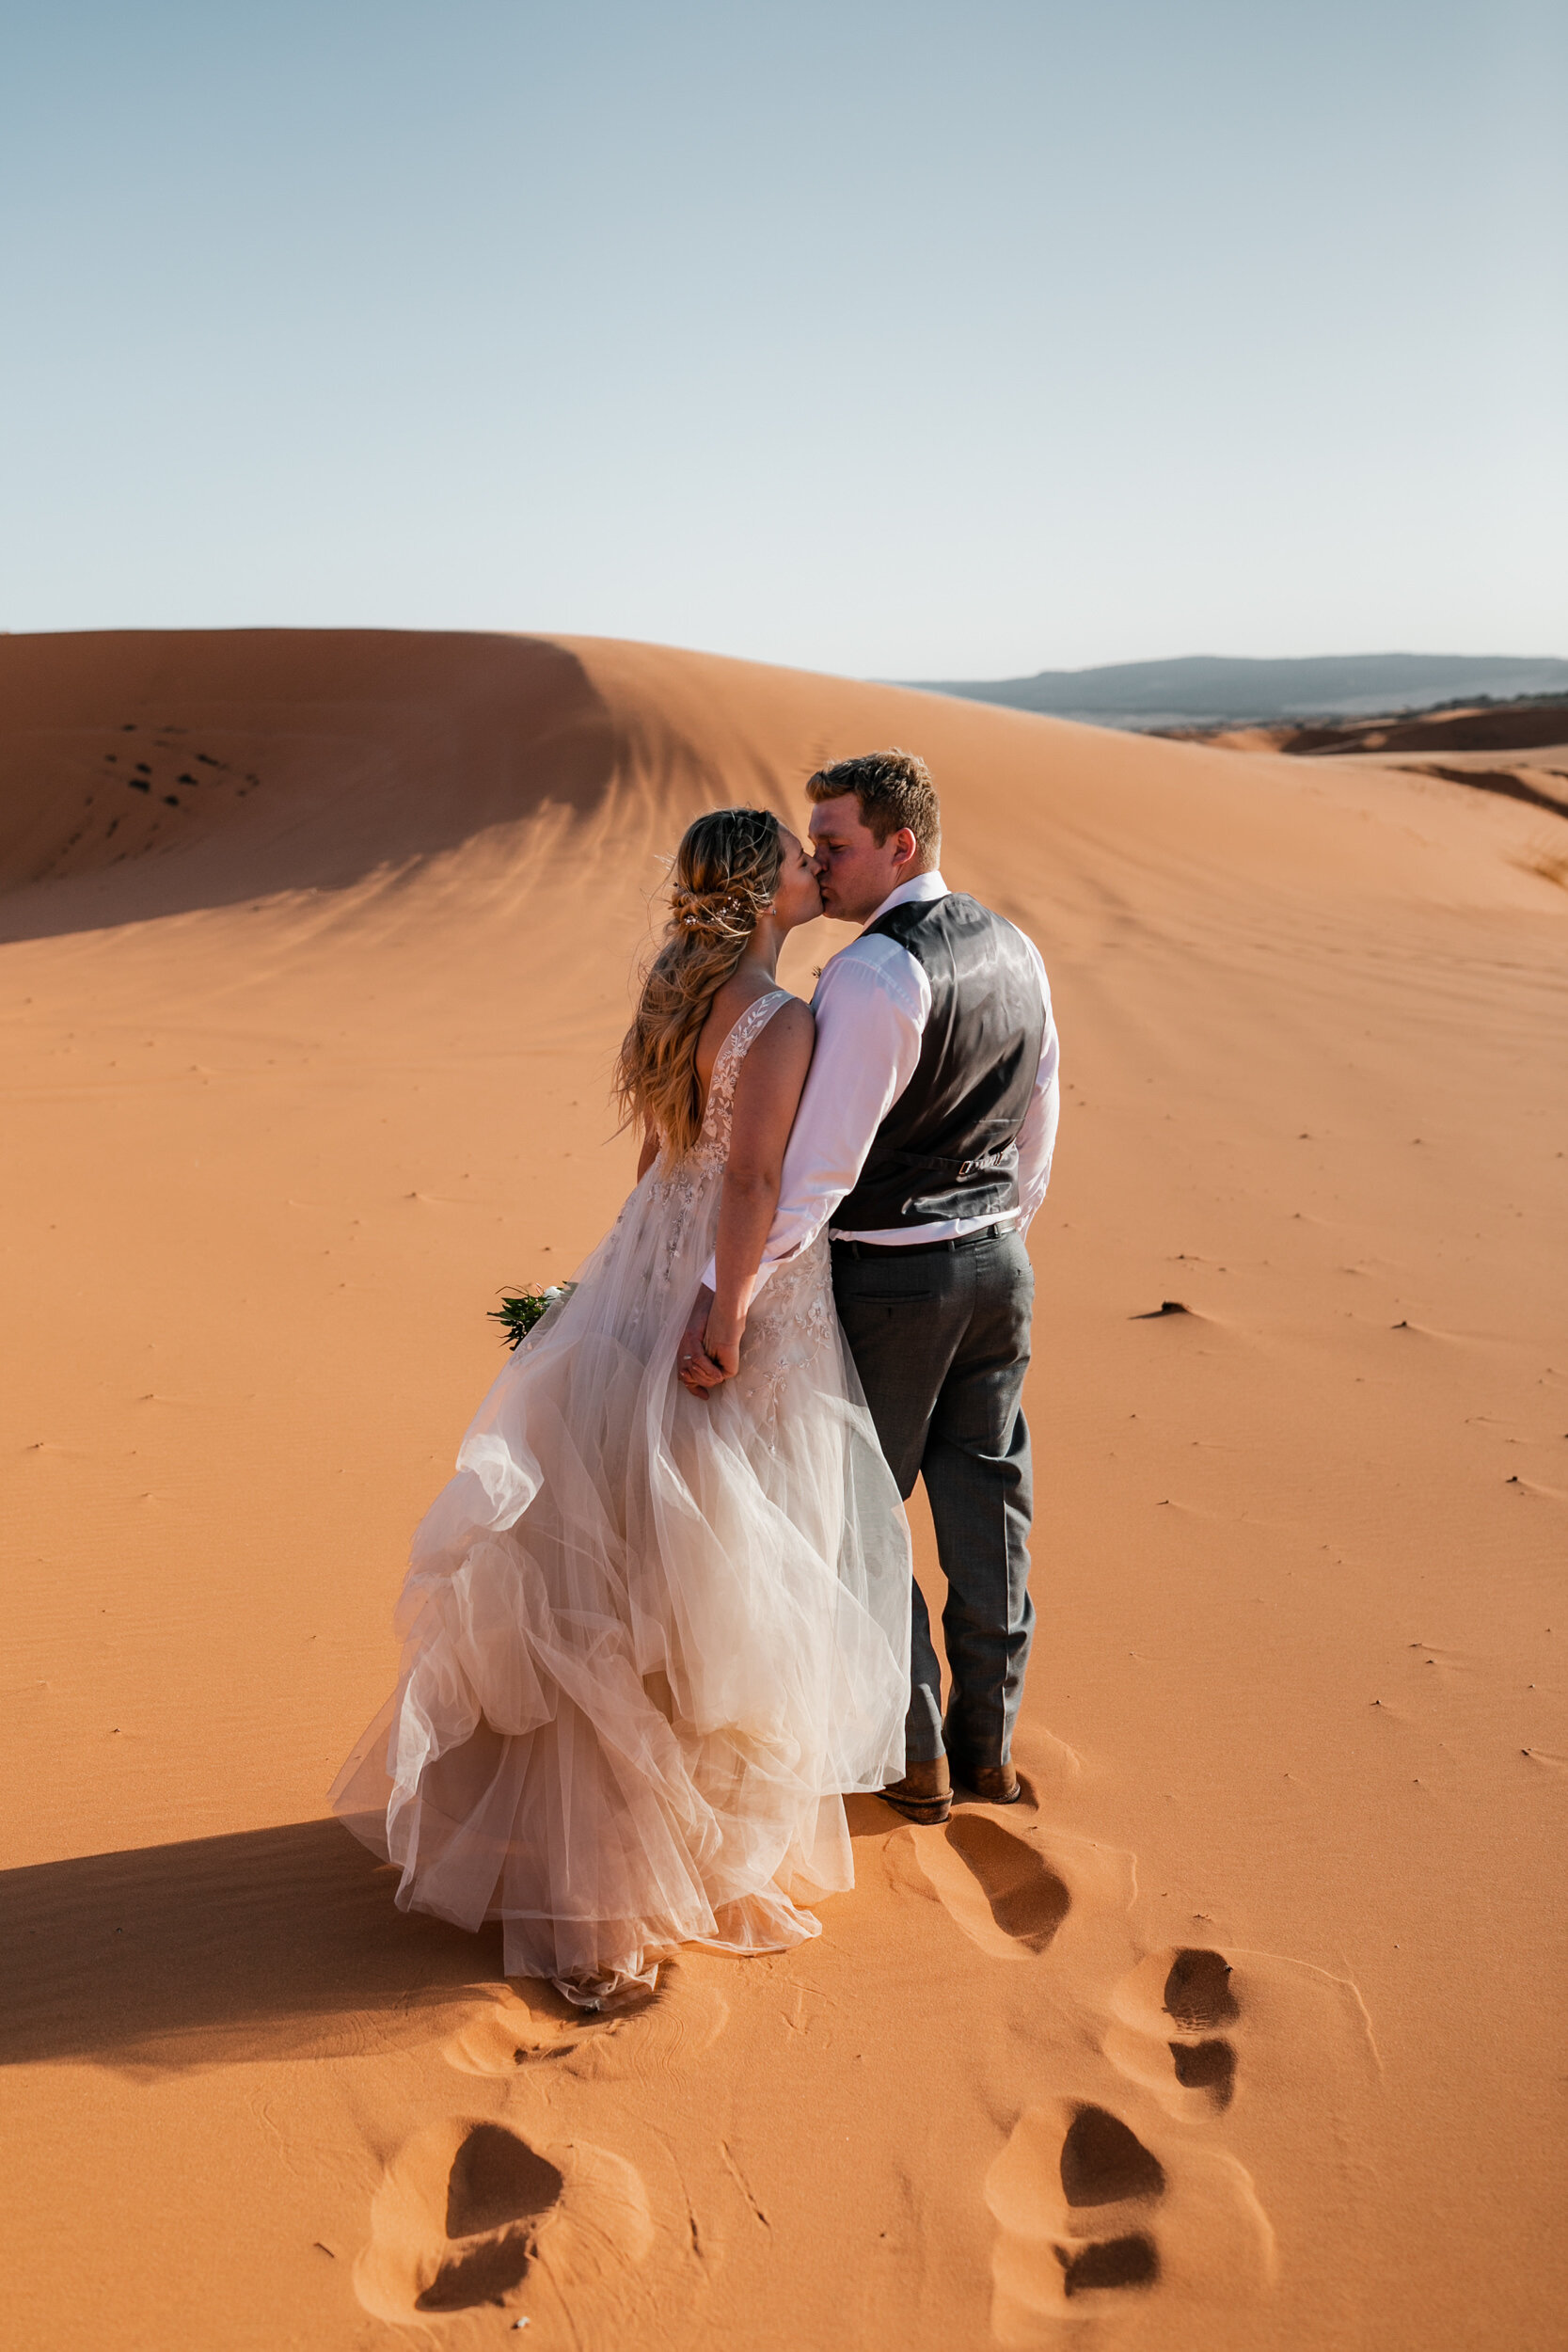 Utah Elopement | Adventurous Intimate Wedding in Sand Dunes | The Hearnes Photography